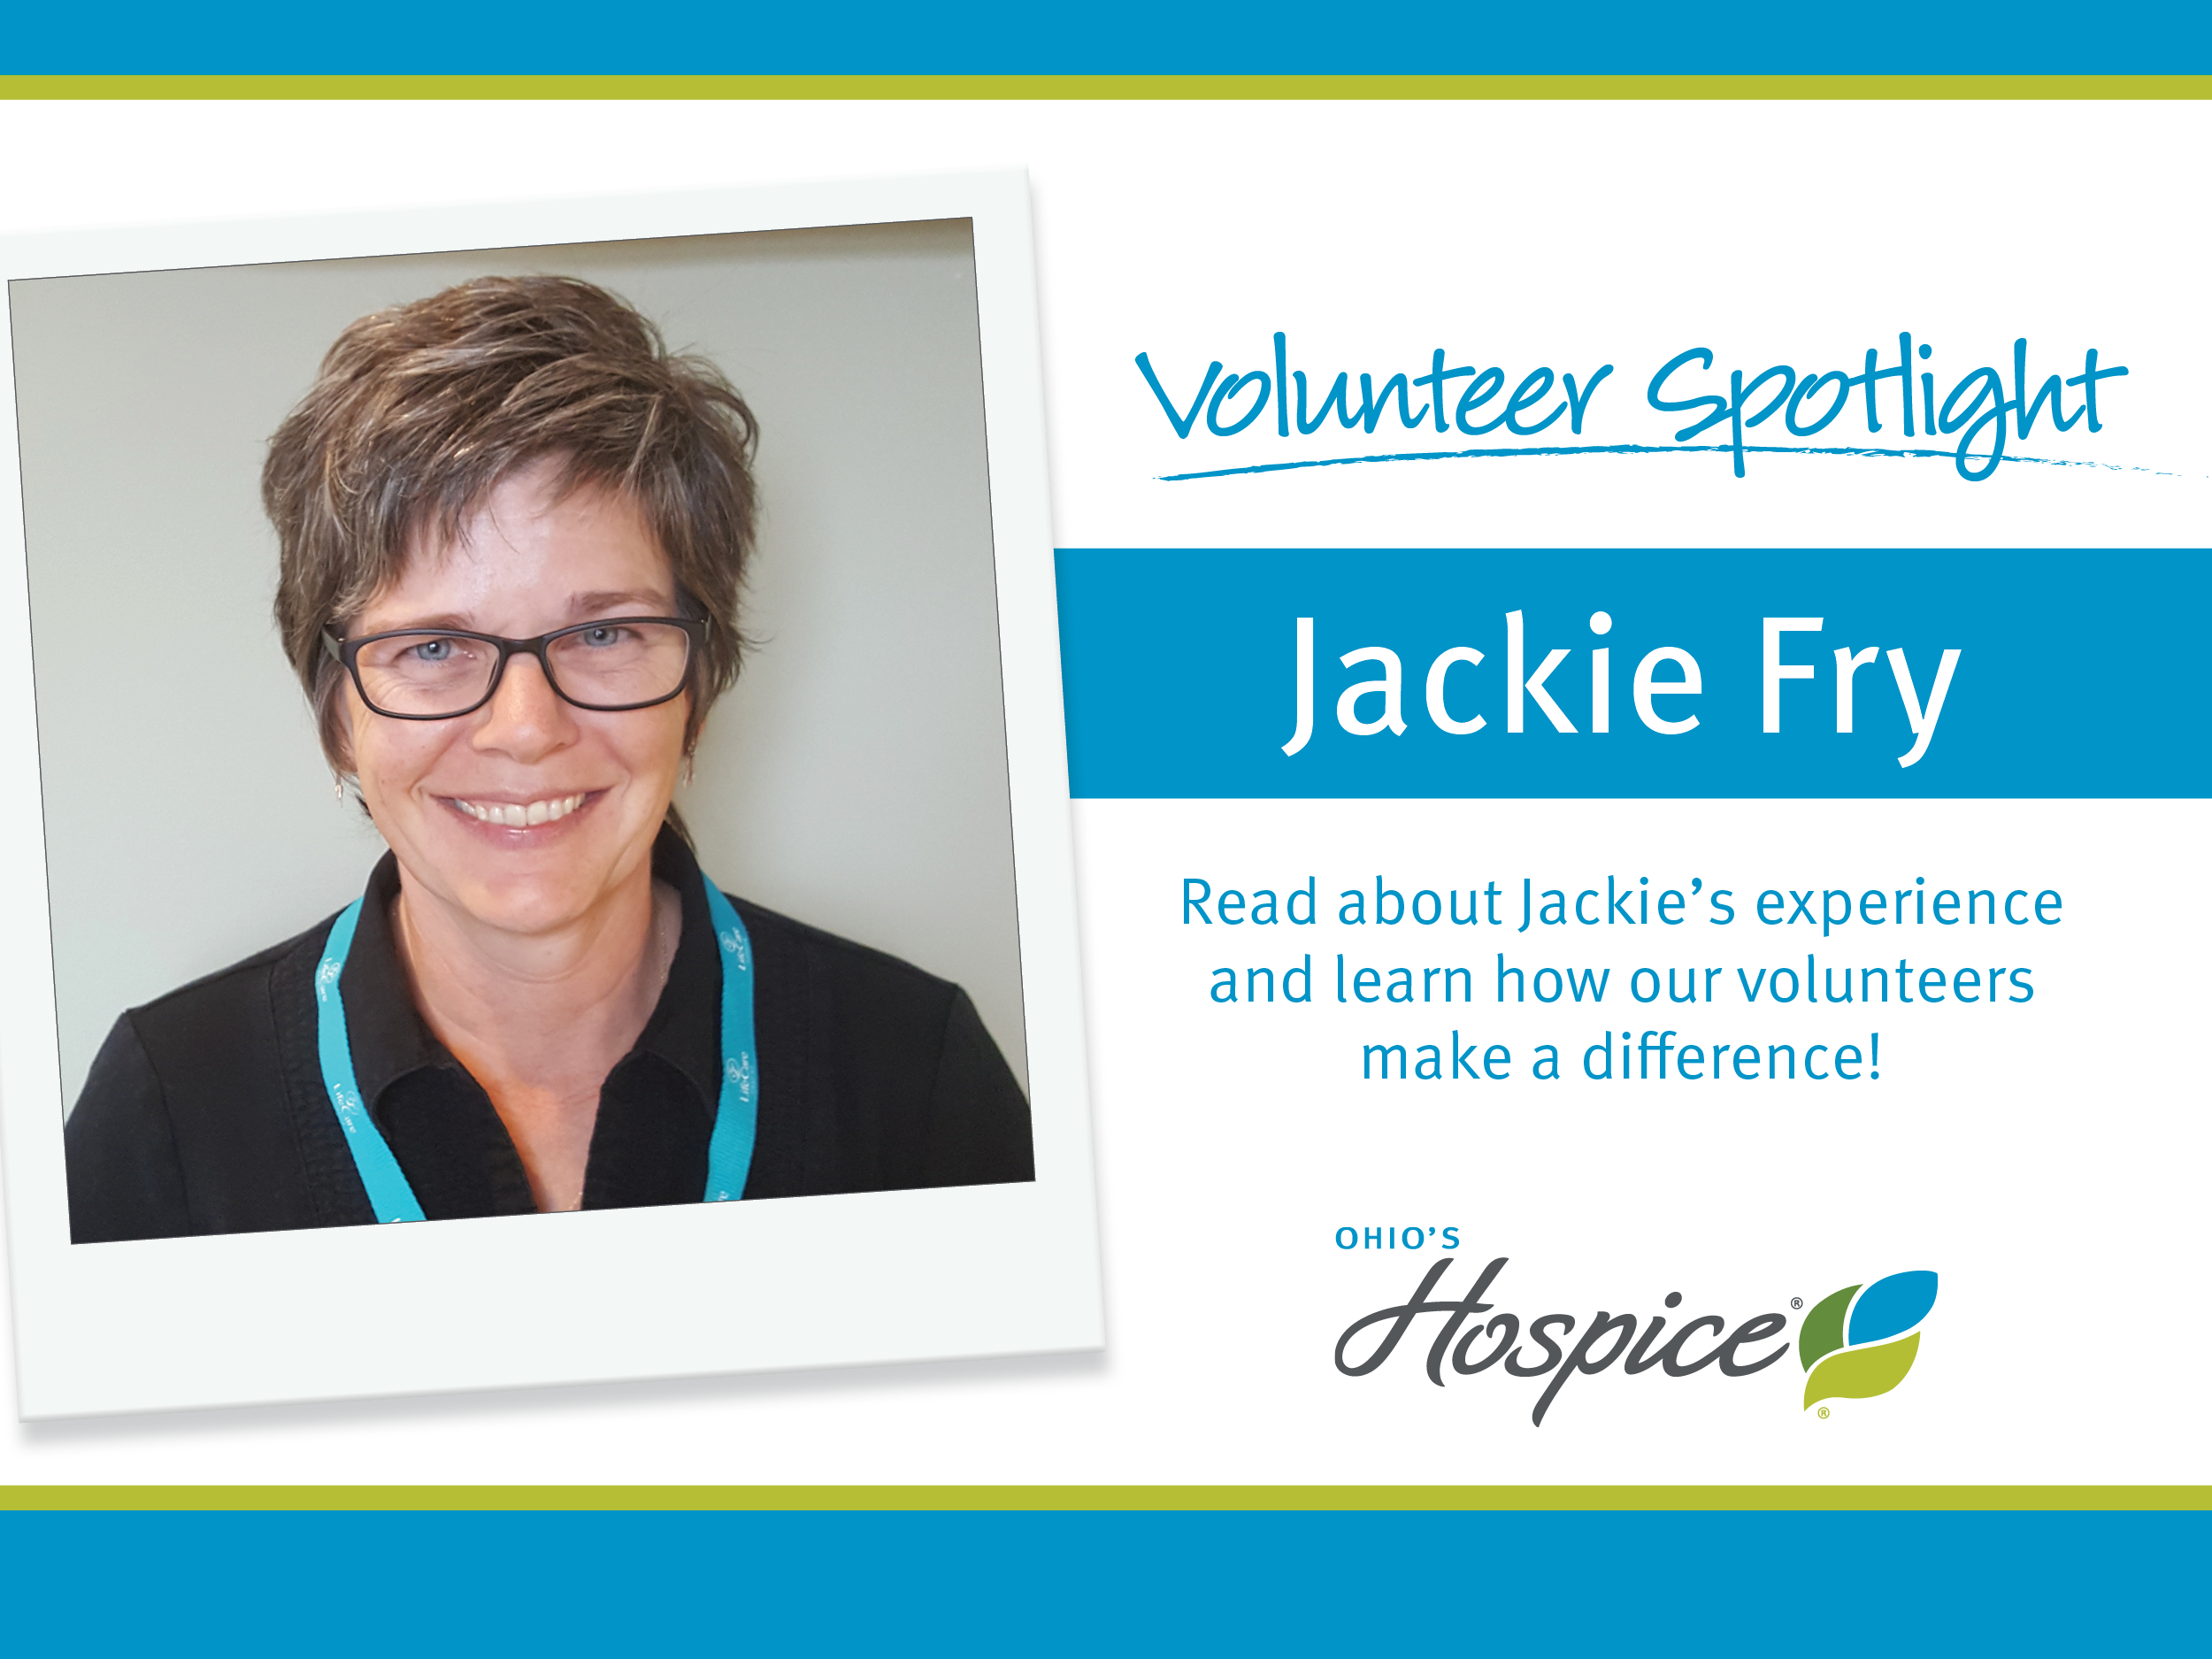 Volunteer Spotlight on Jackie Fry